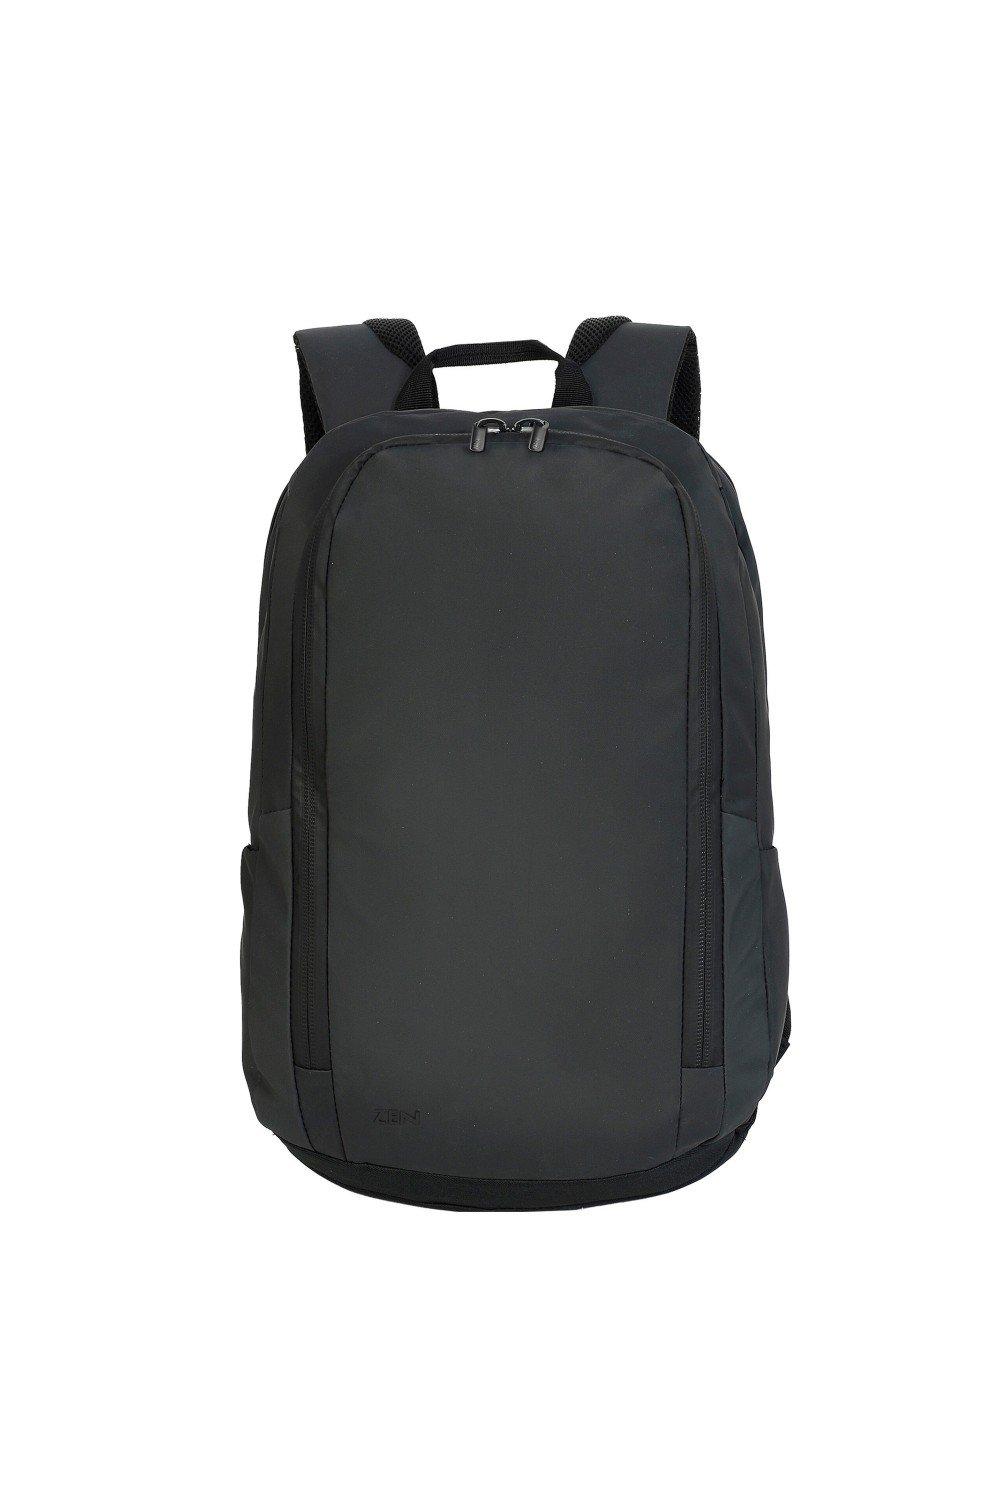 Рюкзак для ноутбука Гамбург Shugon, черный